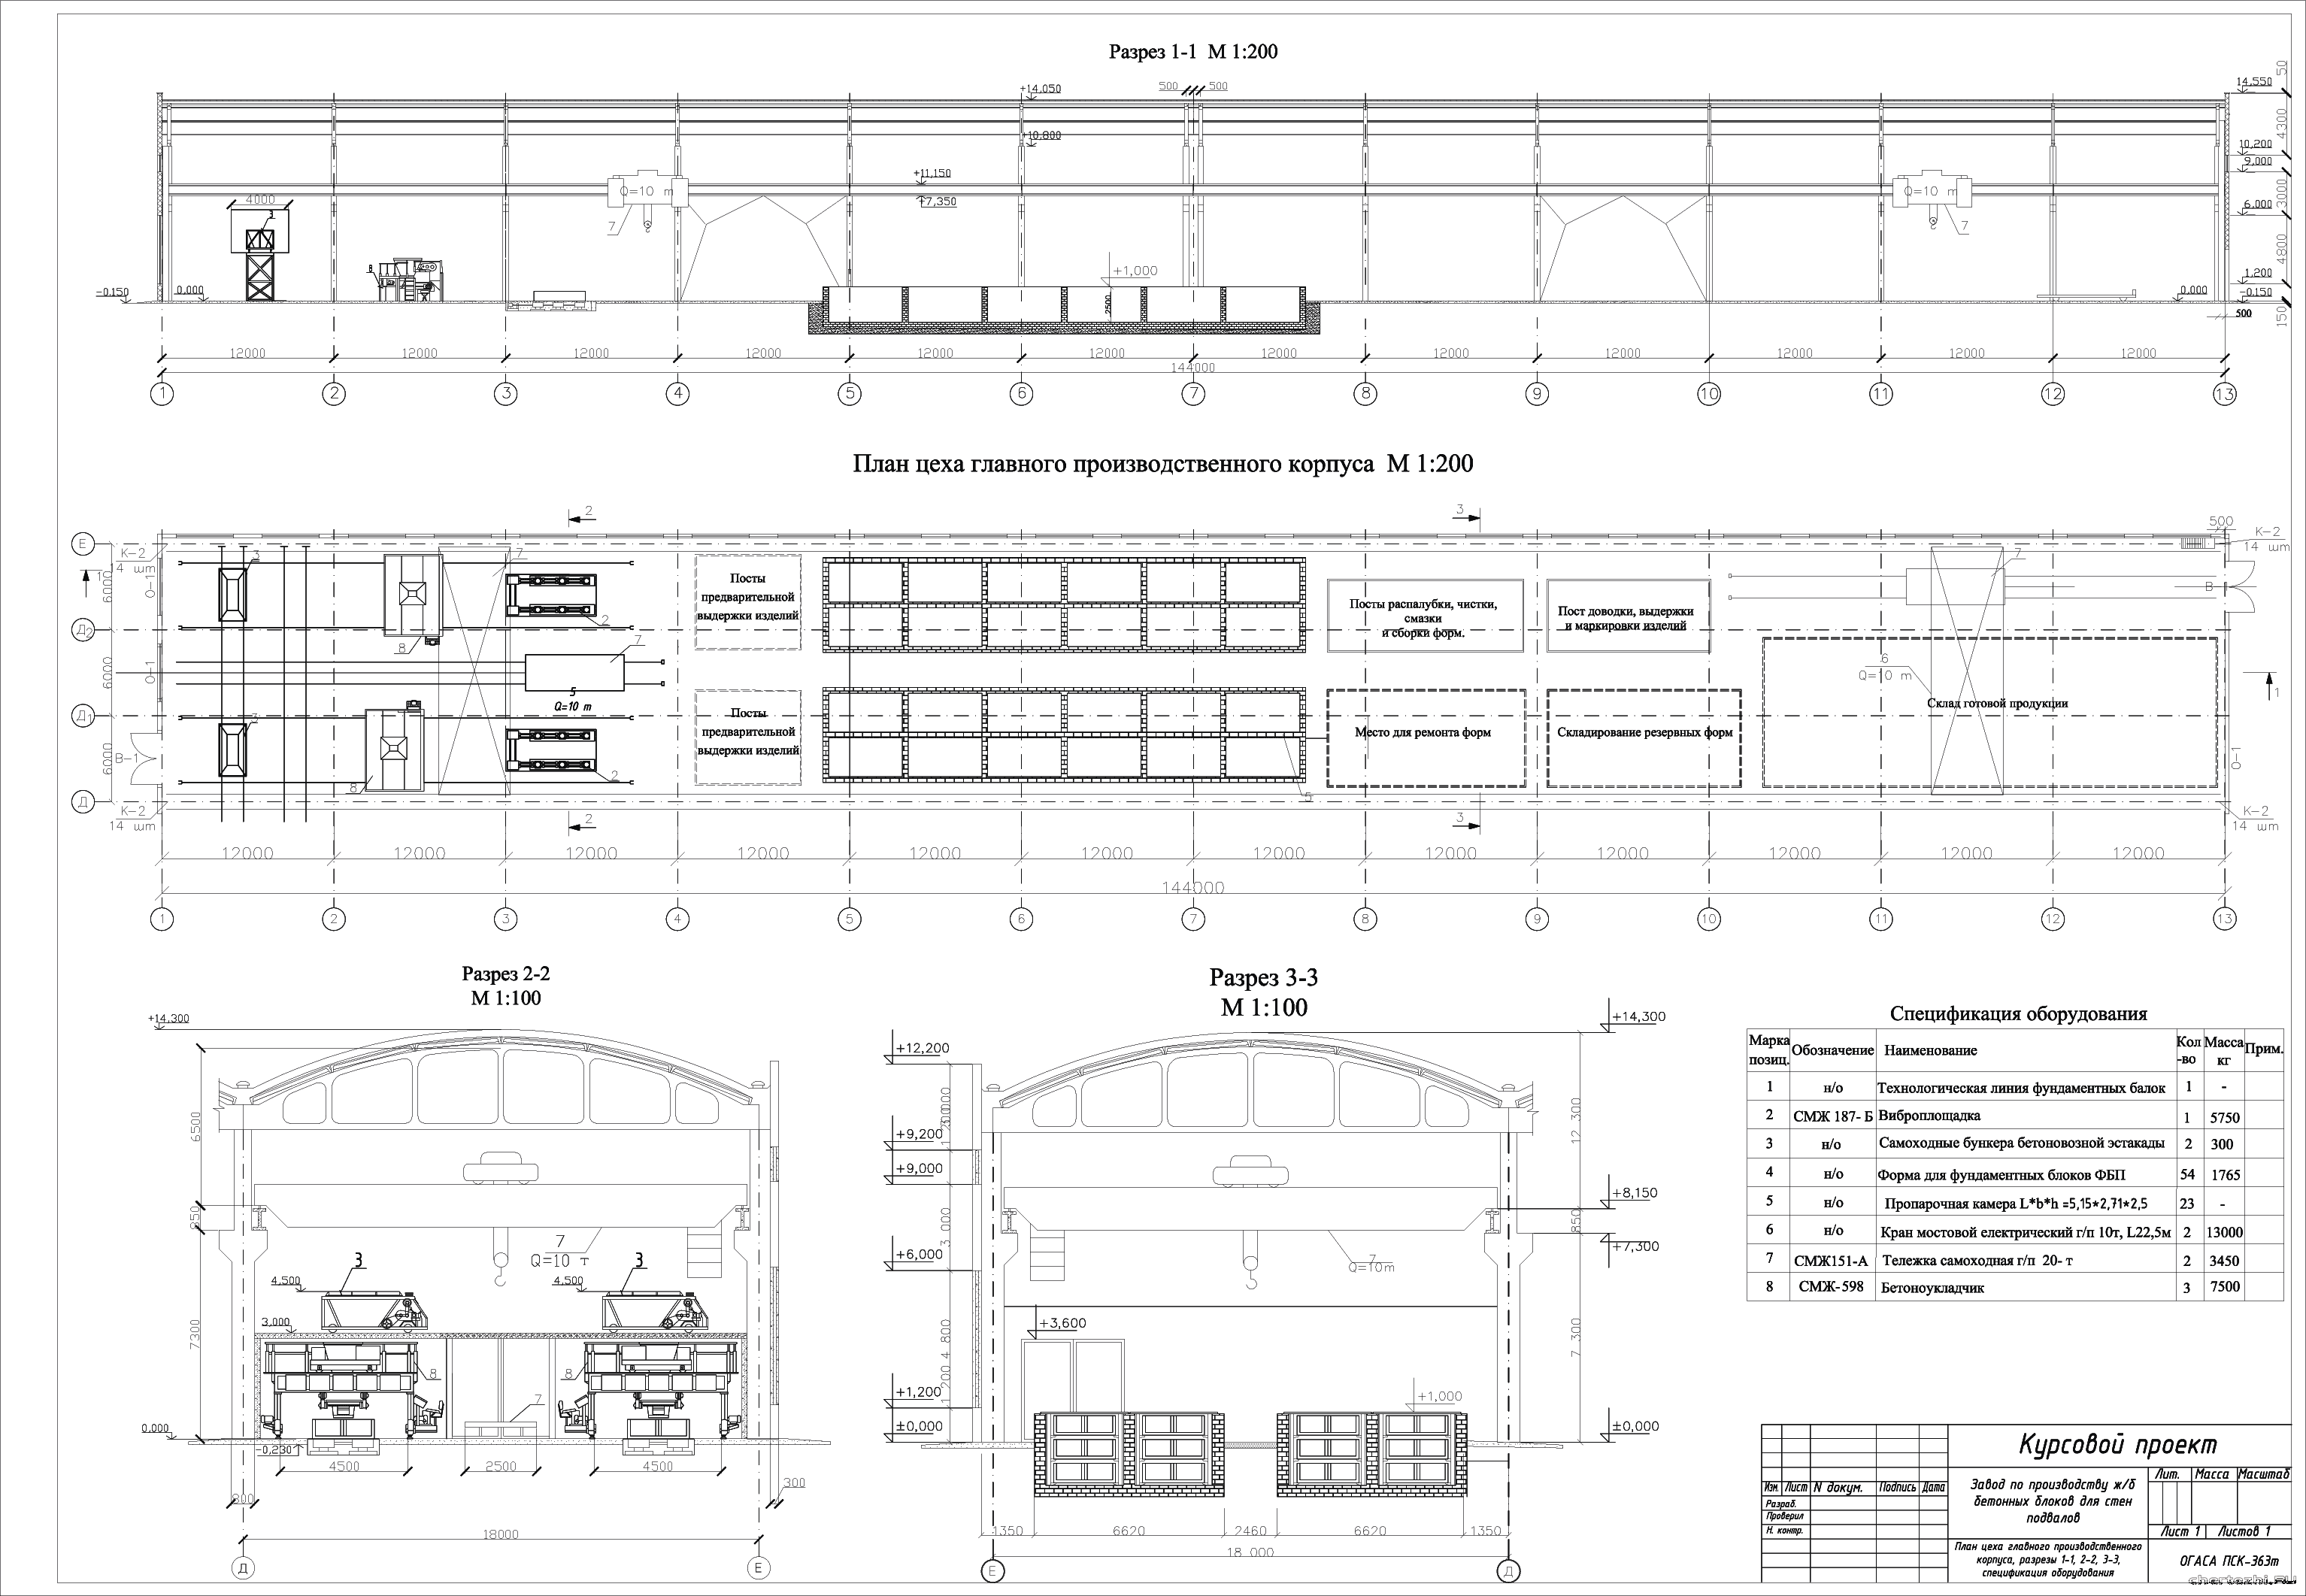 Курсовой проект - Завод по производству железобетонных блоков для стен подвалов